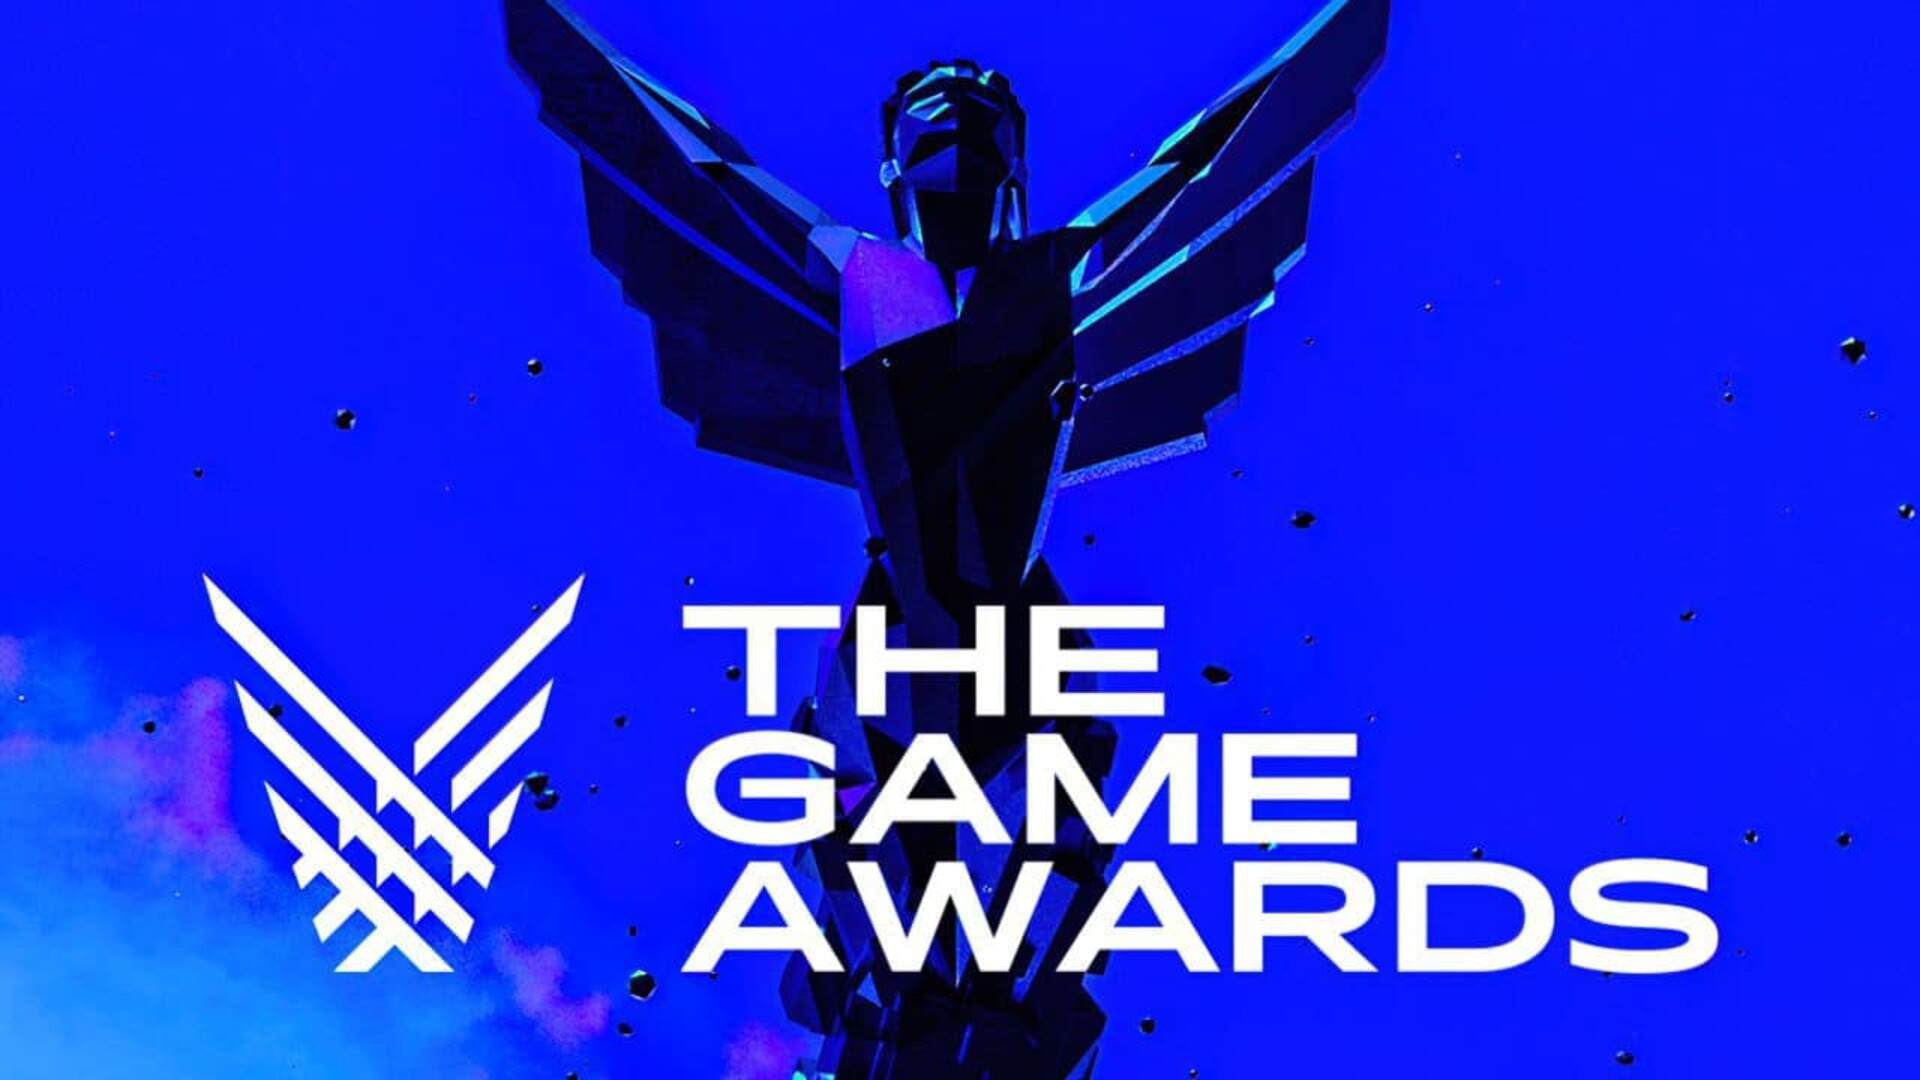 Veja os indicados para Melhor Jogo Mobile de 2021 no The Game Awards -  Mobile Gamer